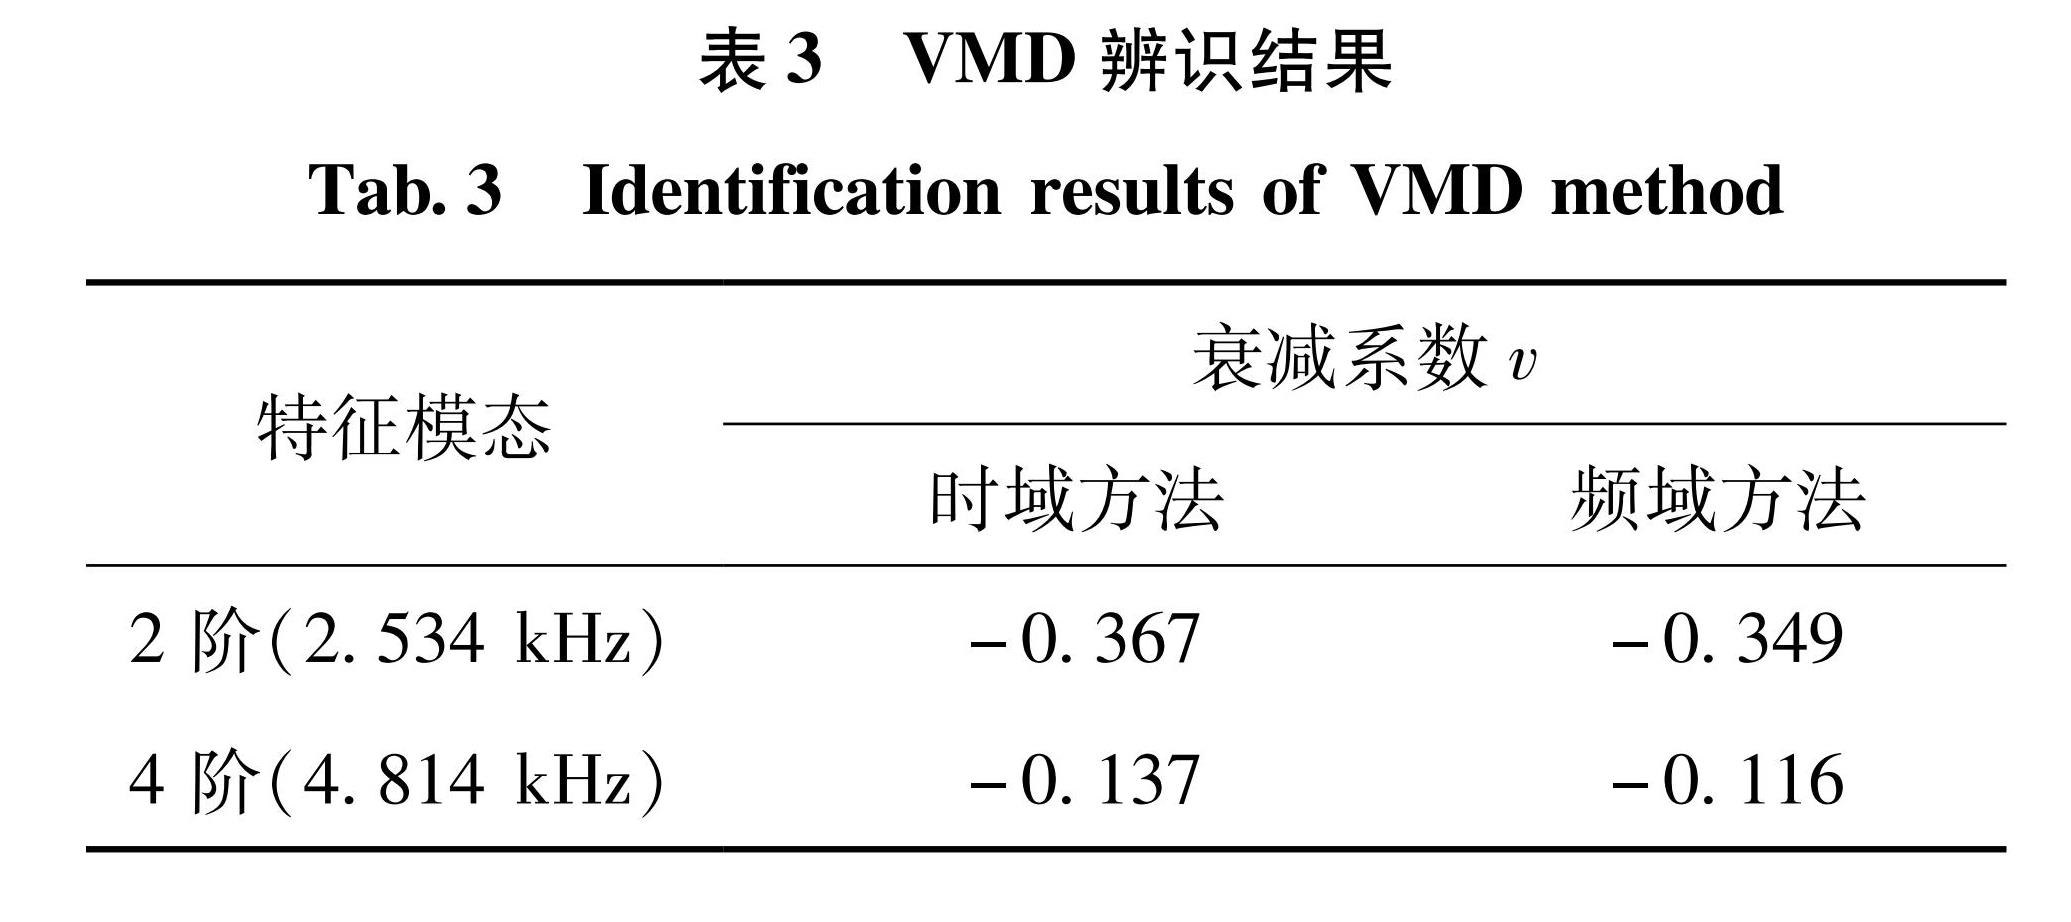 表3 VMD辨识结果<br/>Tab.3 Identification results of VMD method